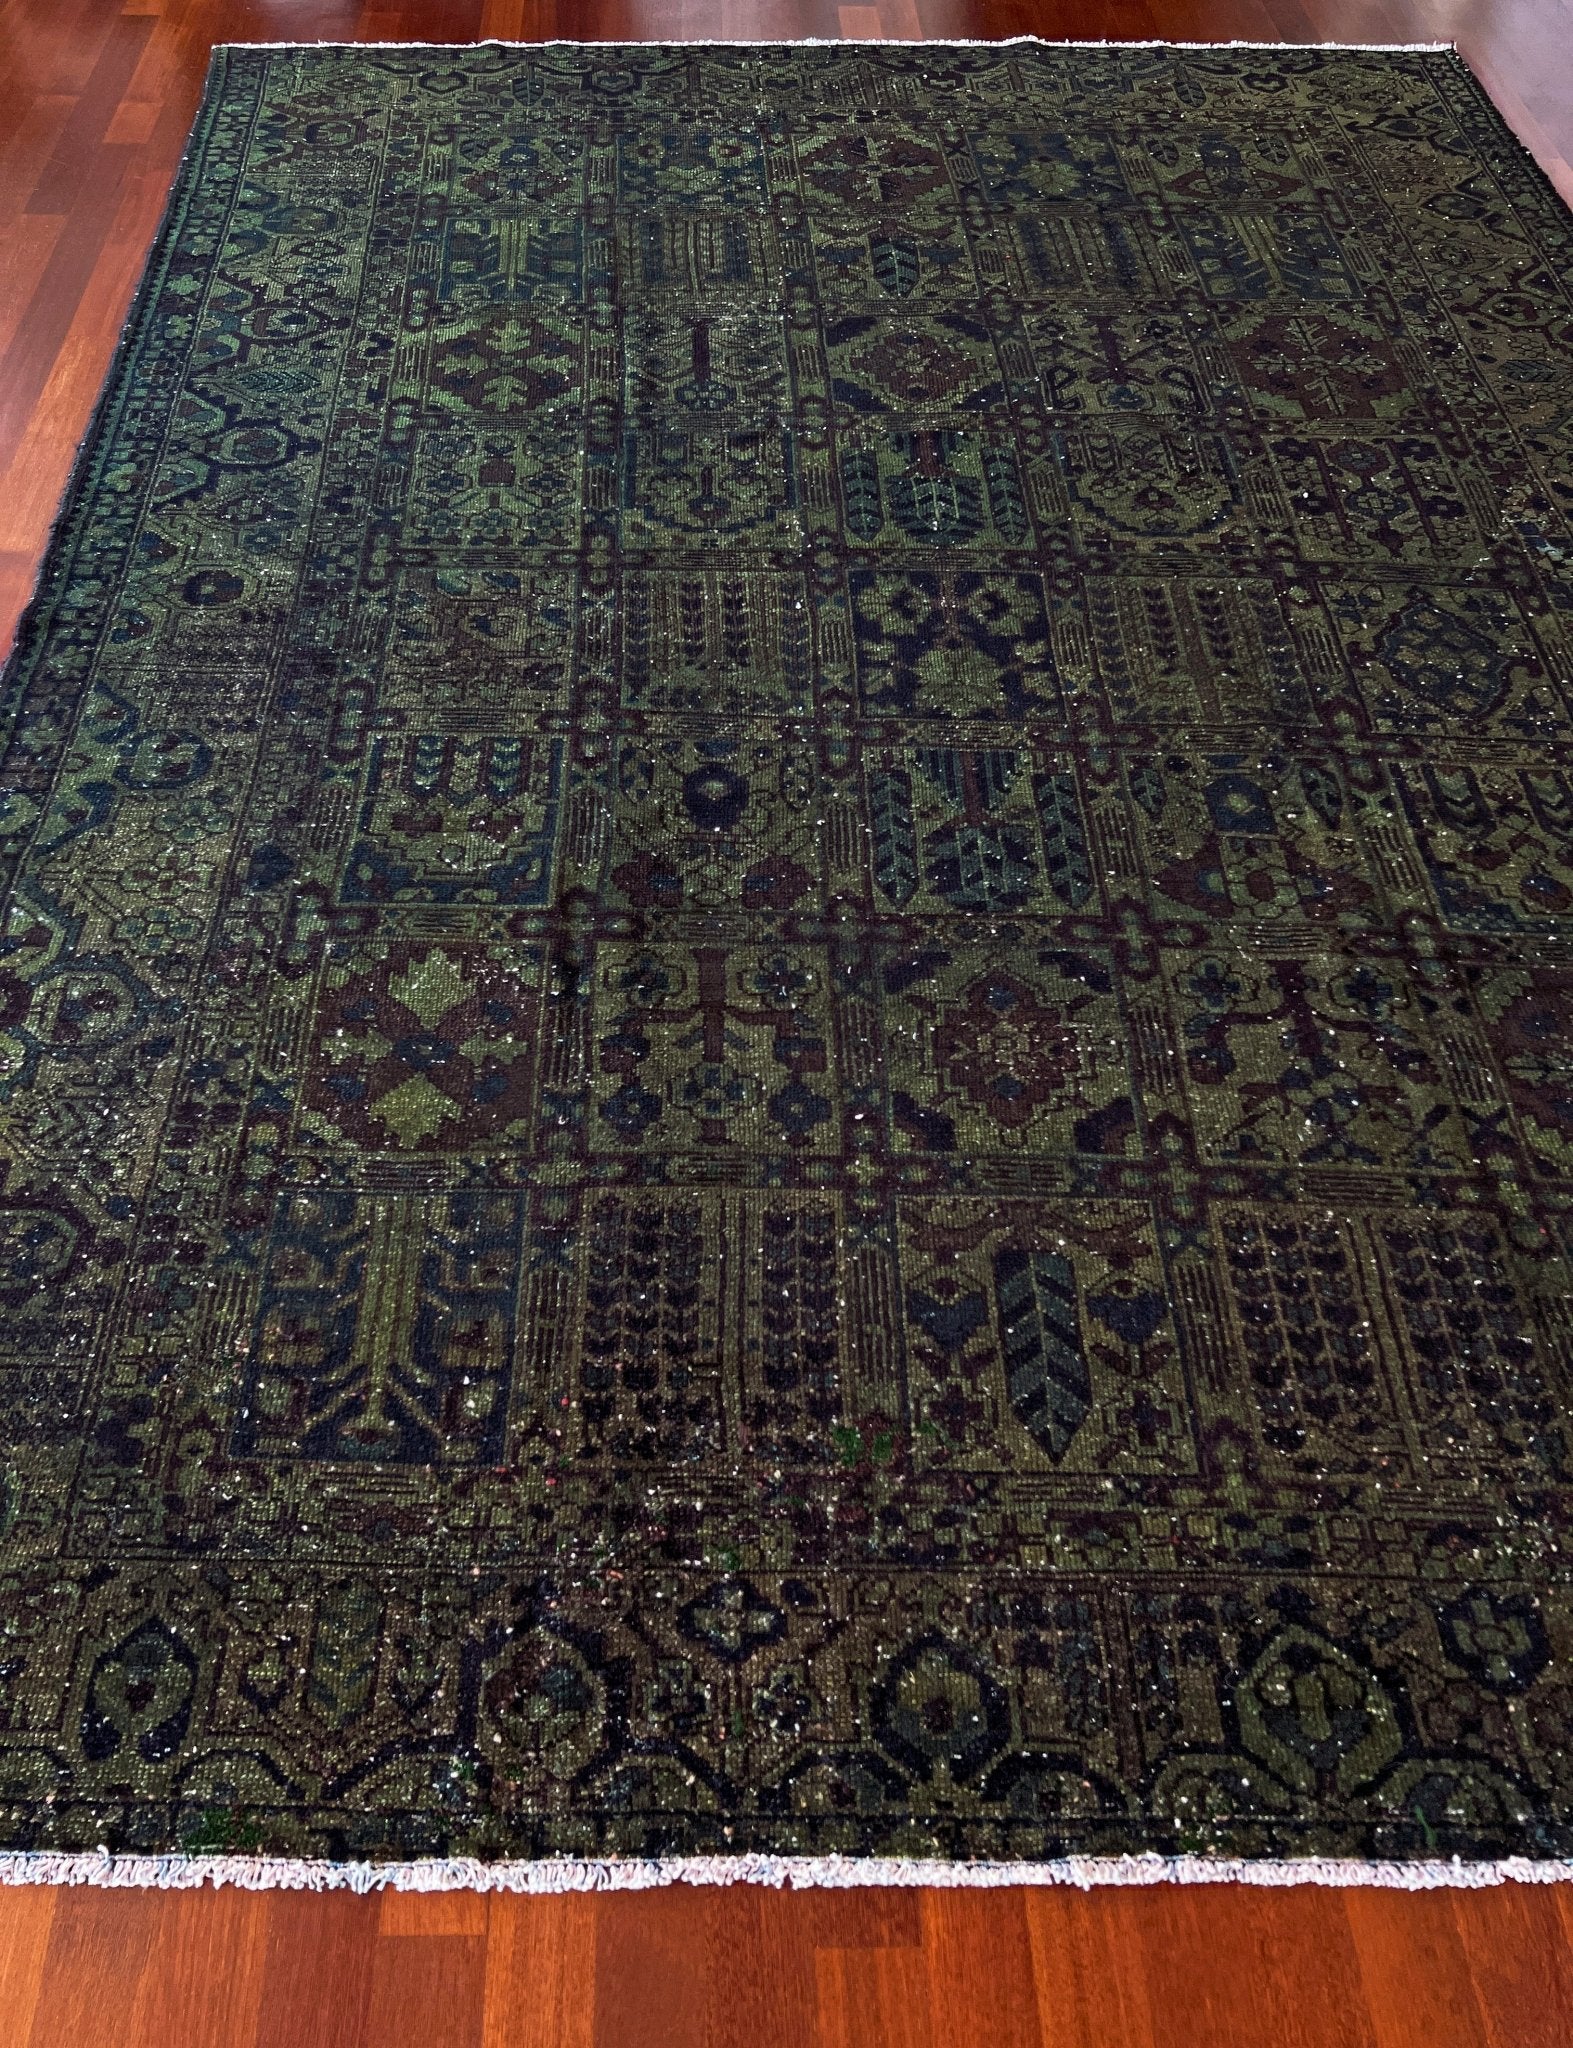 large Bakhtiari persian rug. Oriental rug shop SF Bay area. Handmade wool rug store palo alto los altos Berkeley.